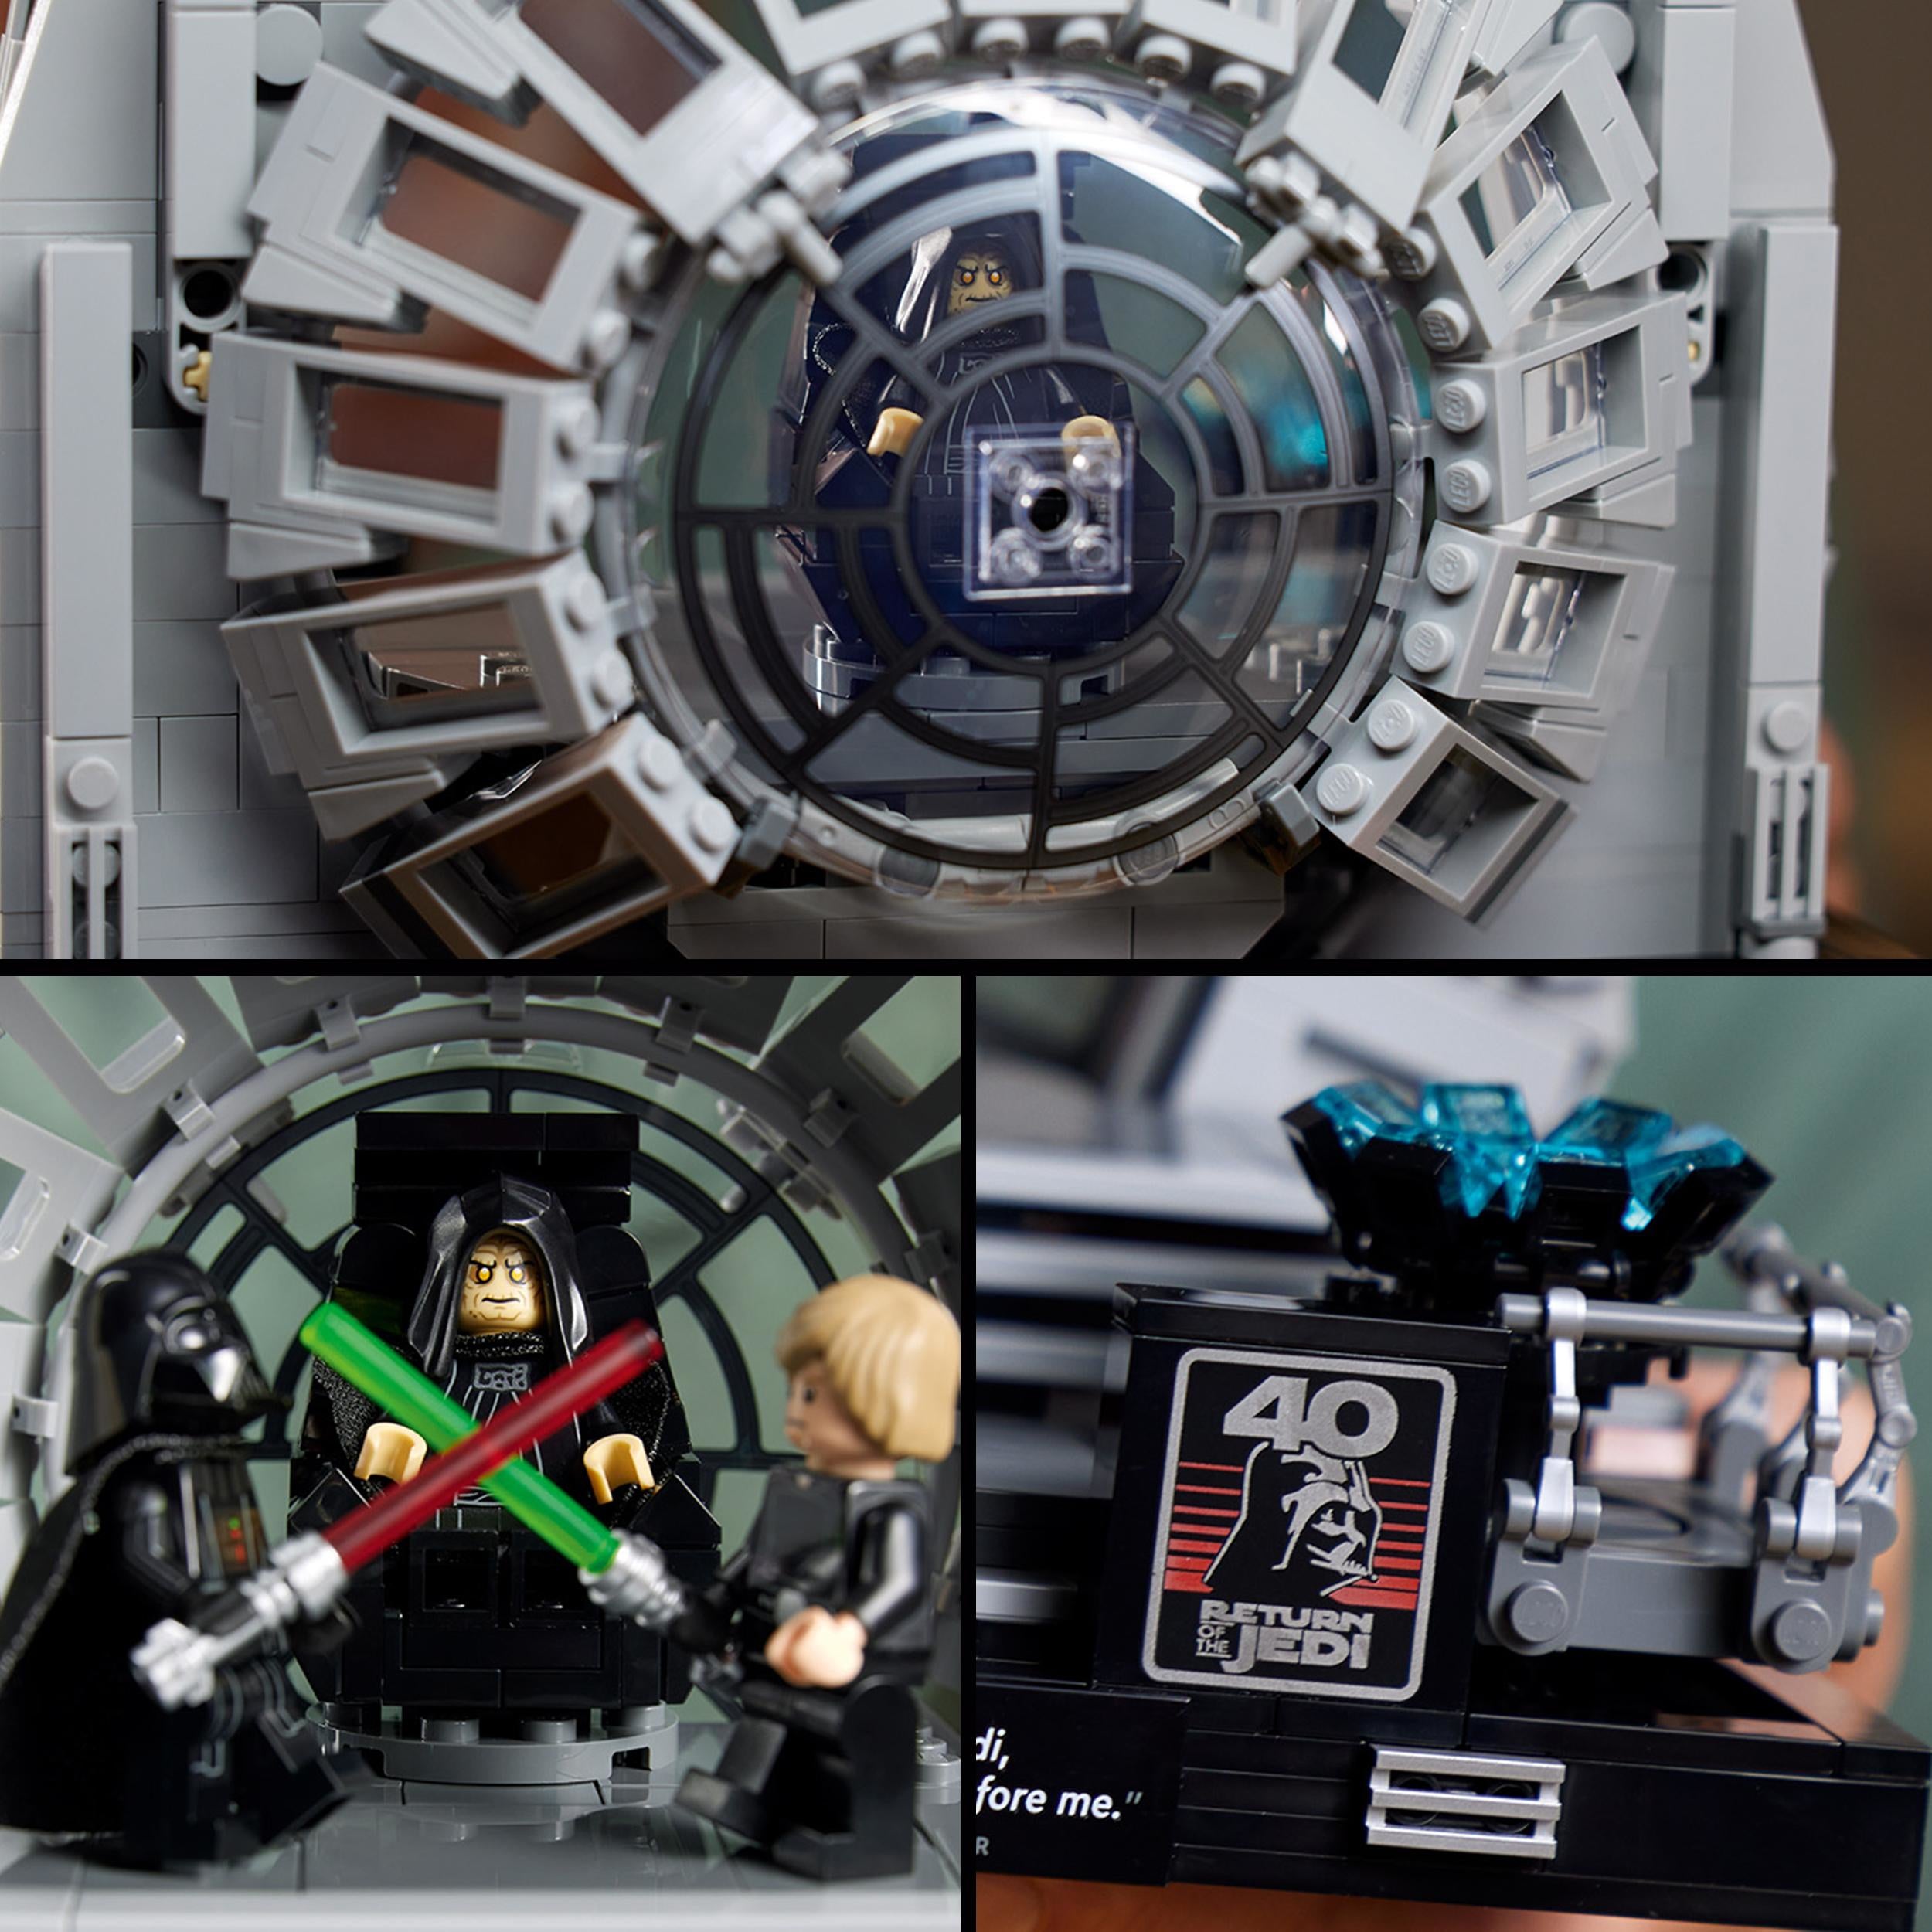 75352 - LEGO Star Wars - Diorama Sala del trono dellimperatore